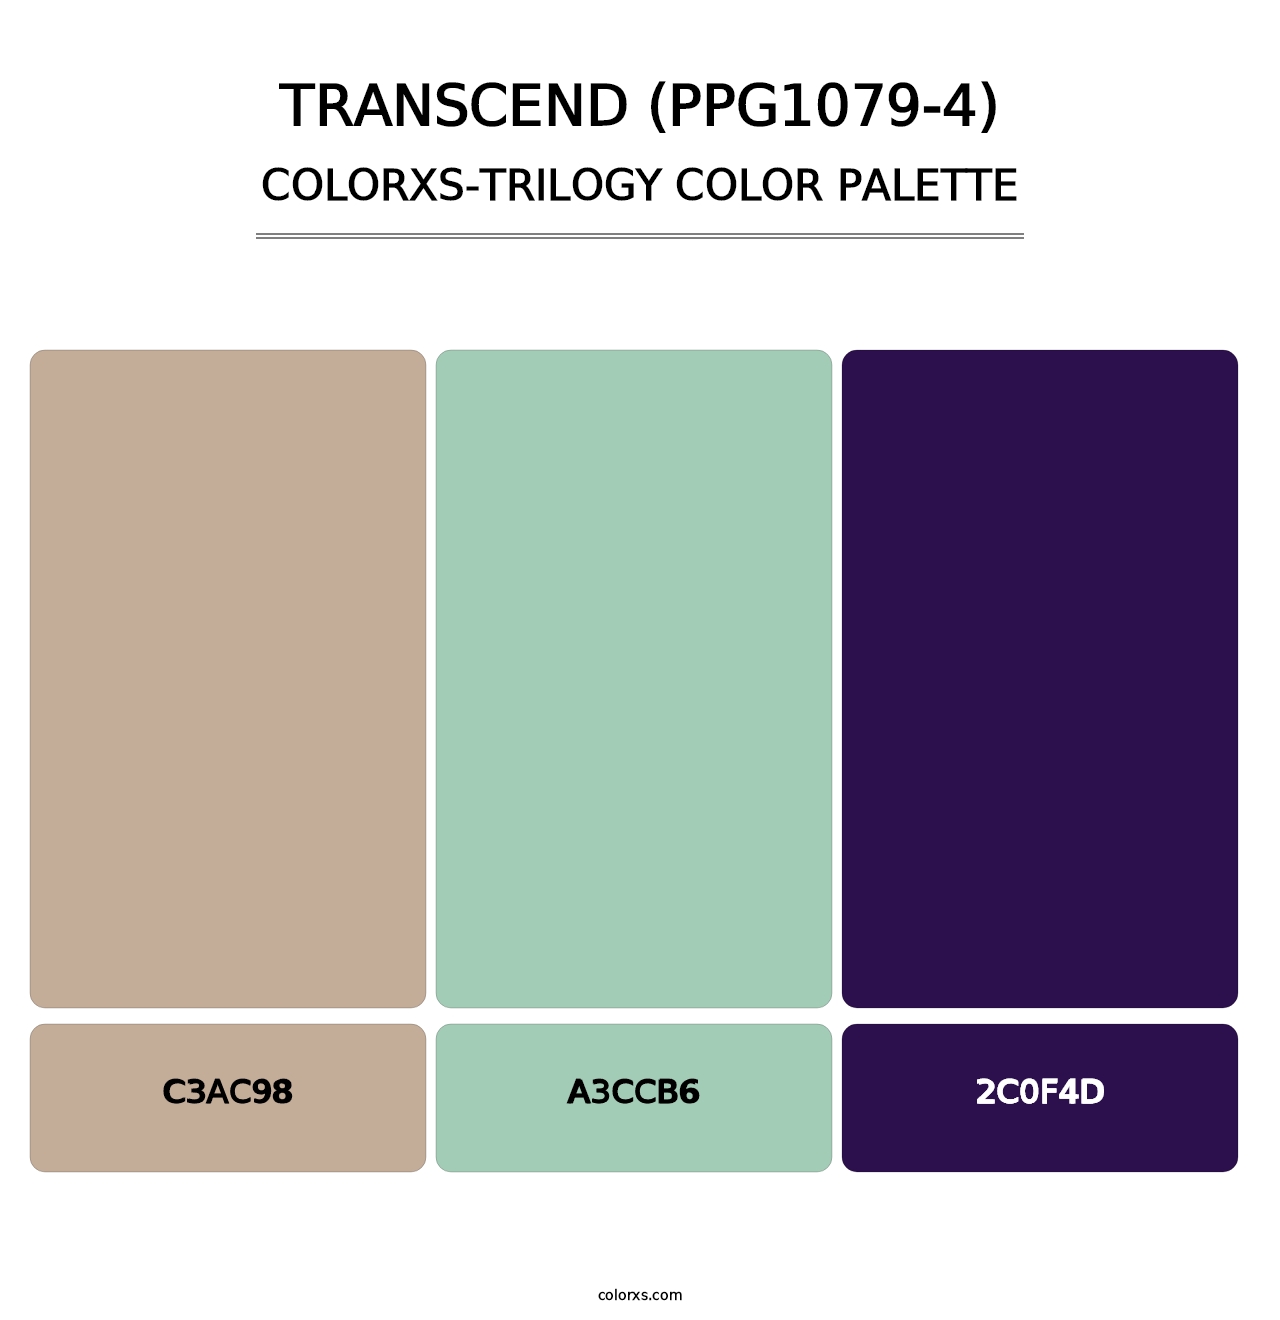 Transcend (PPG1079-4) - Colorxs Trilogy Palette